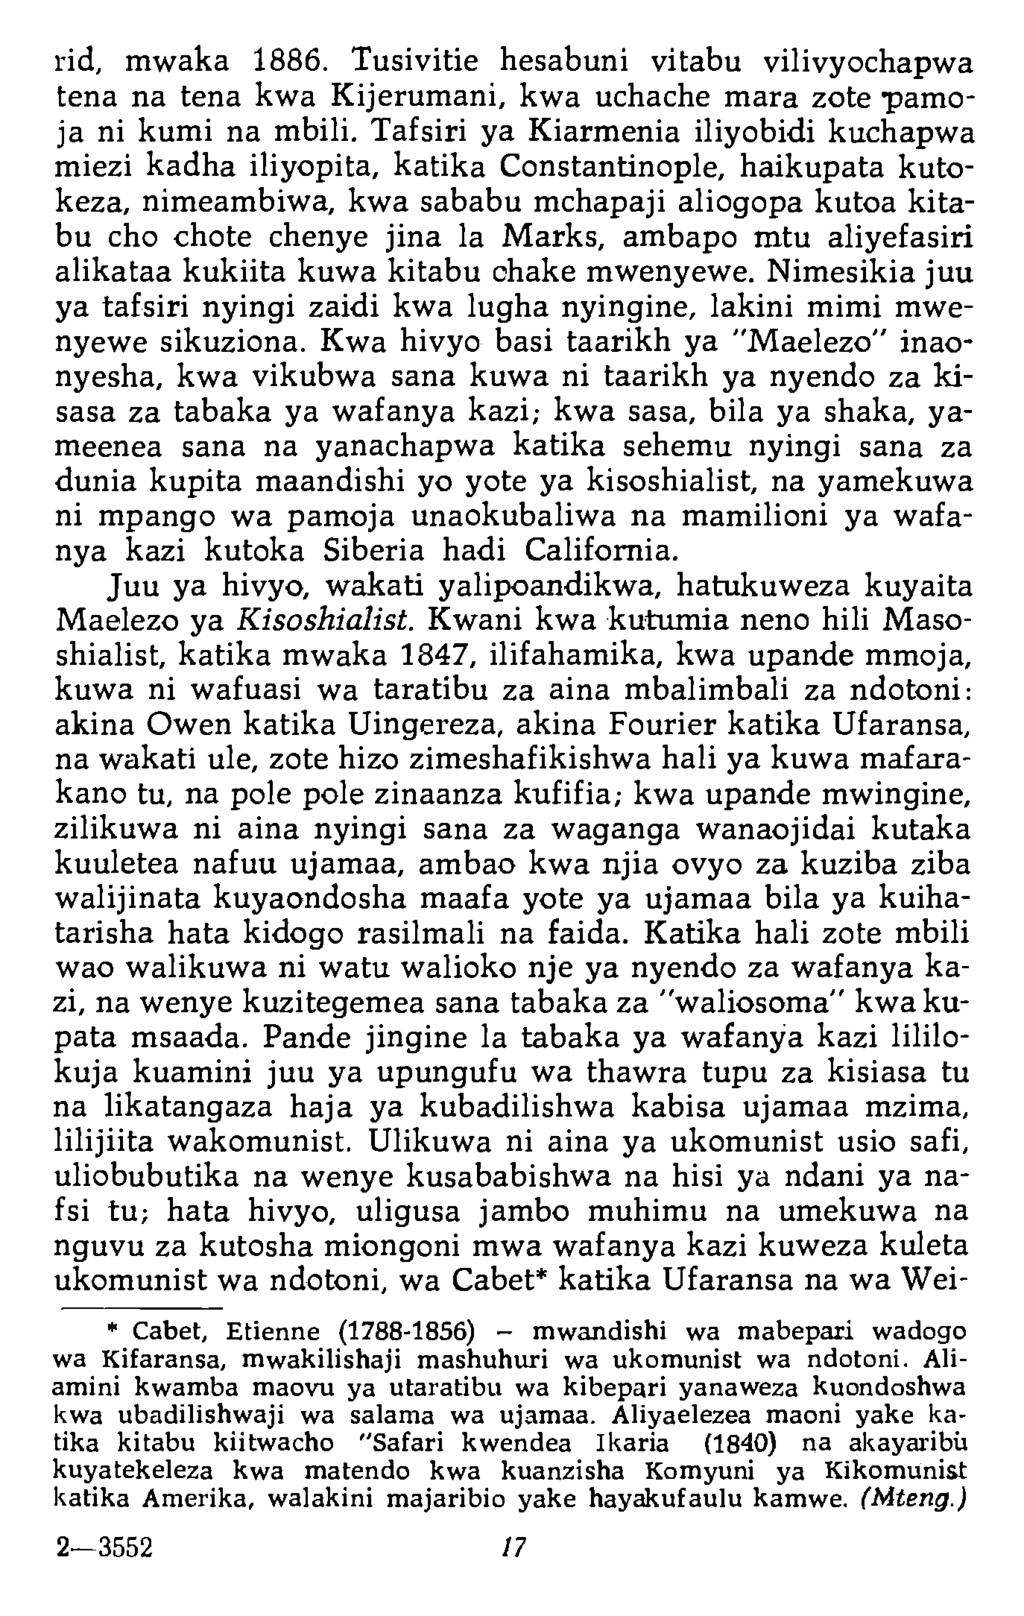 rid, mwaka 1886. Tusivitie hesabuni vitabu vilivyochapwa tena na tena kwa Kijerumani, kwa uchache mara zote pamoja ni kumi na mbili.